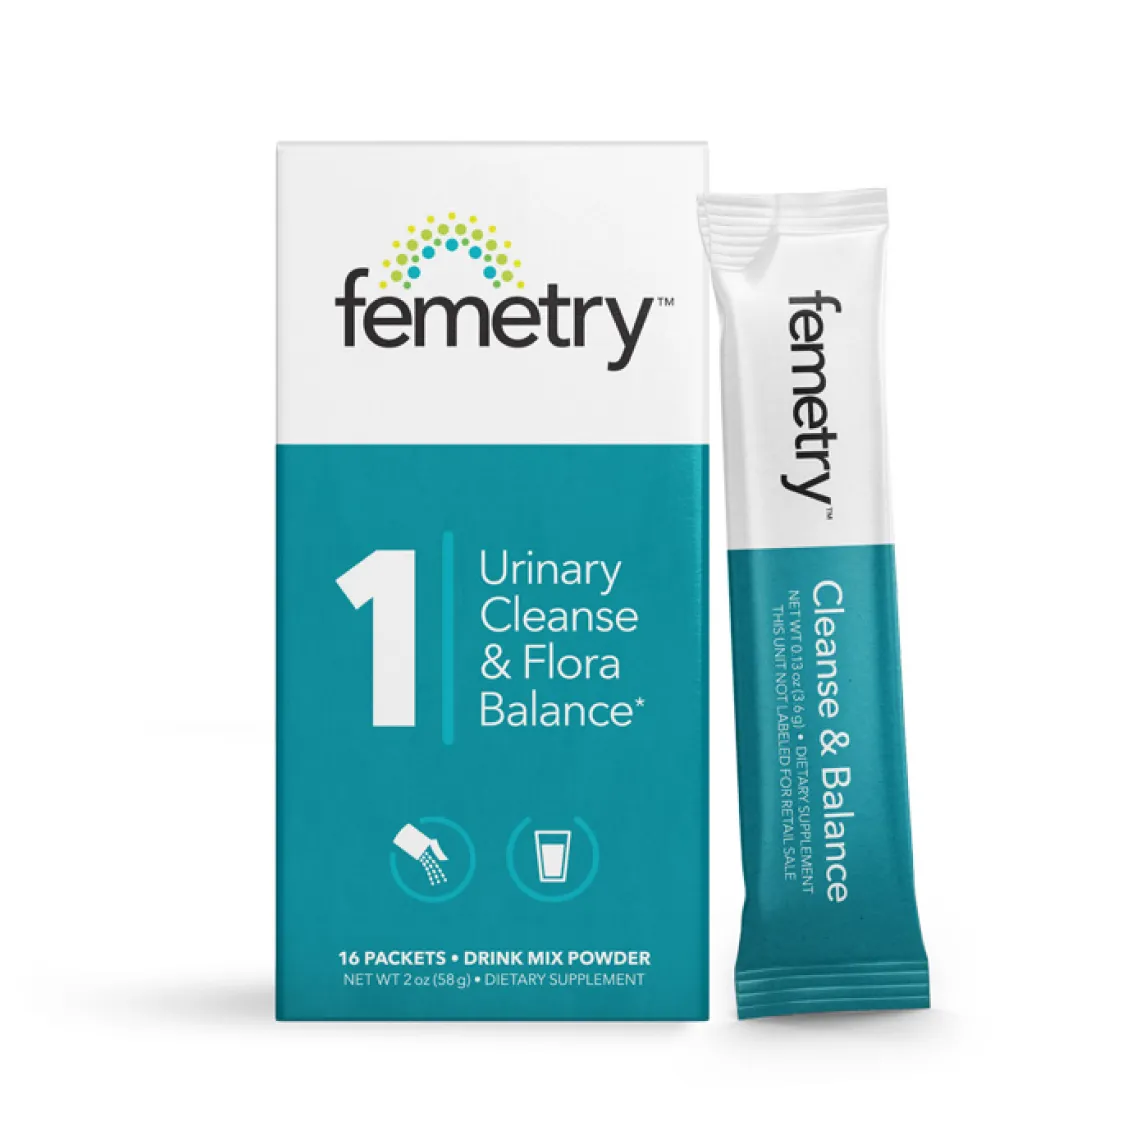 Femetry Urinary